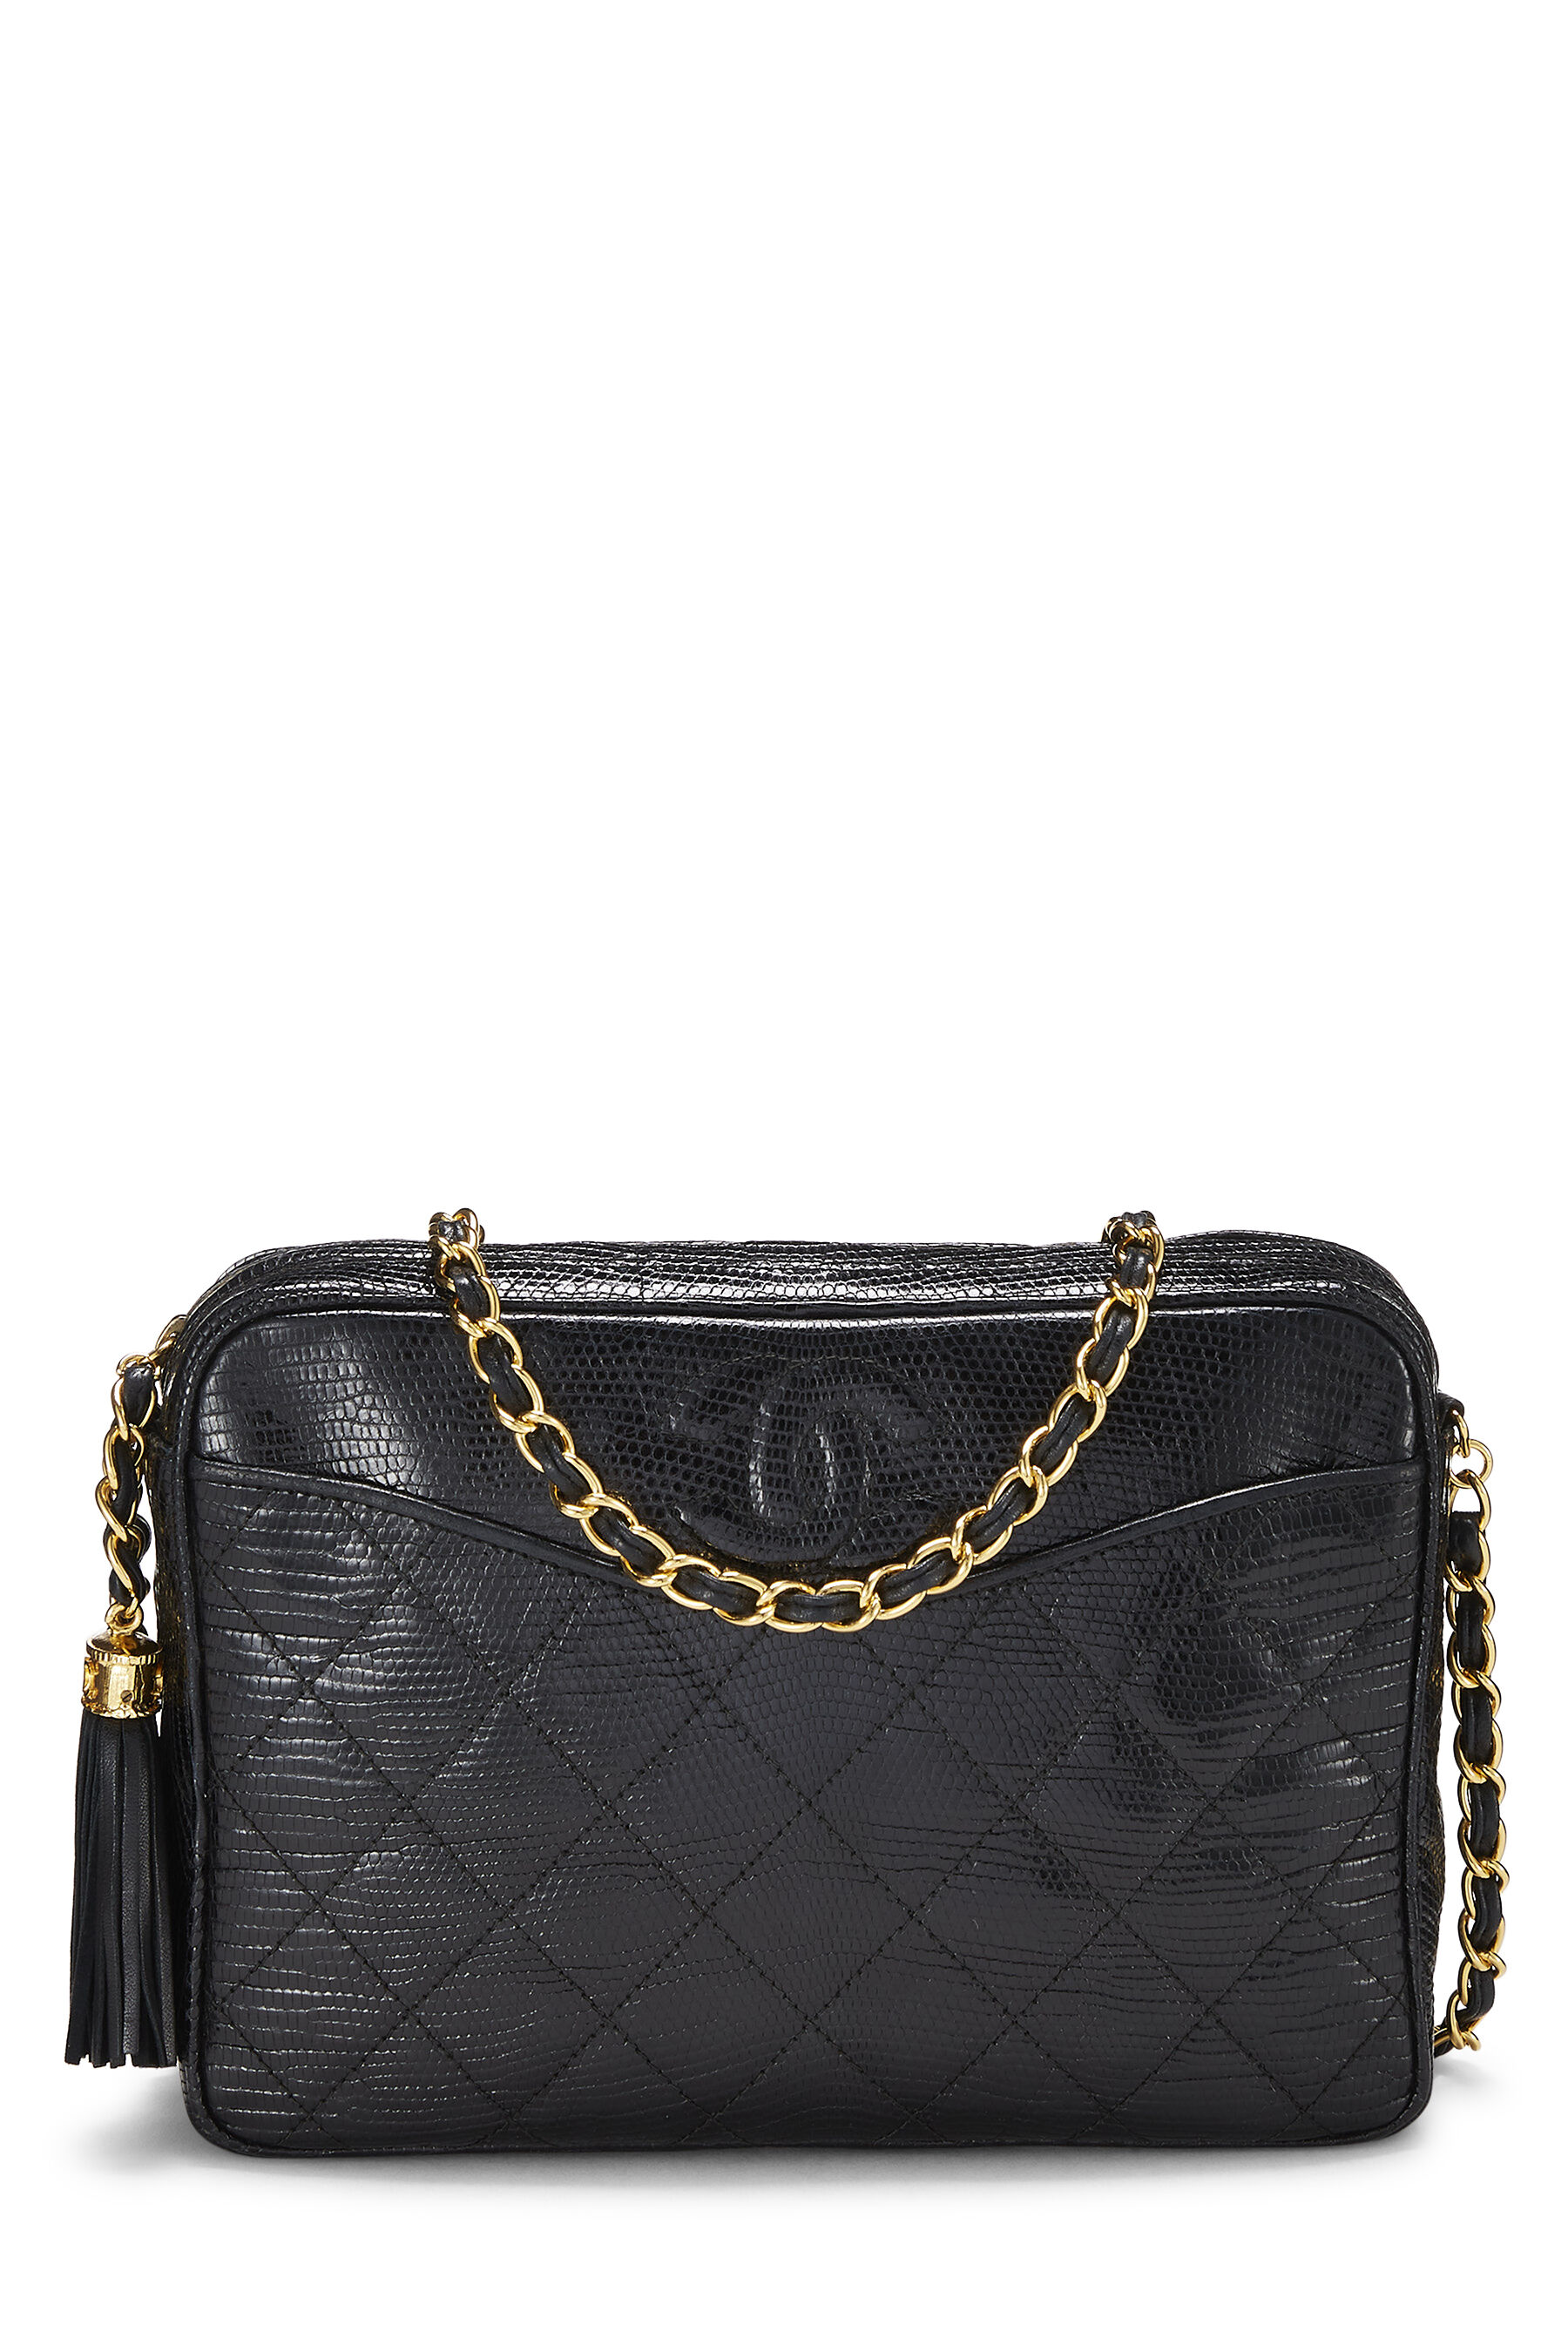 Chanel - Black Quilted Lizard Pocket Camera Bag Medium